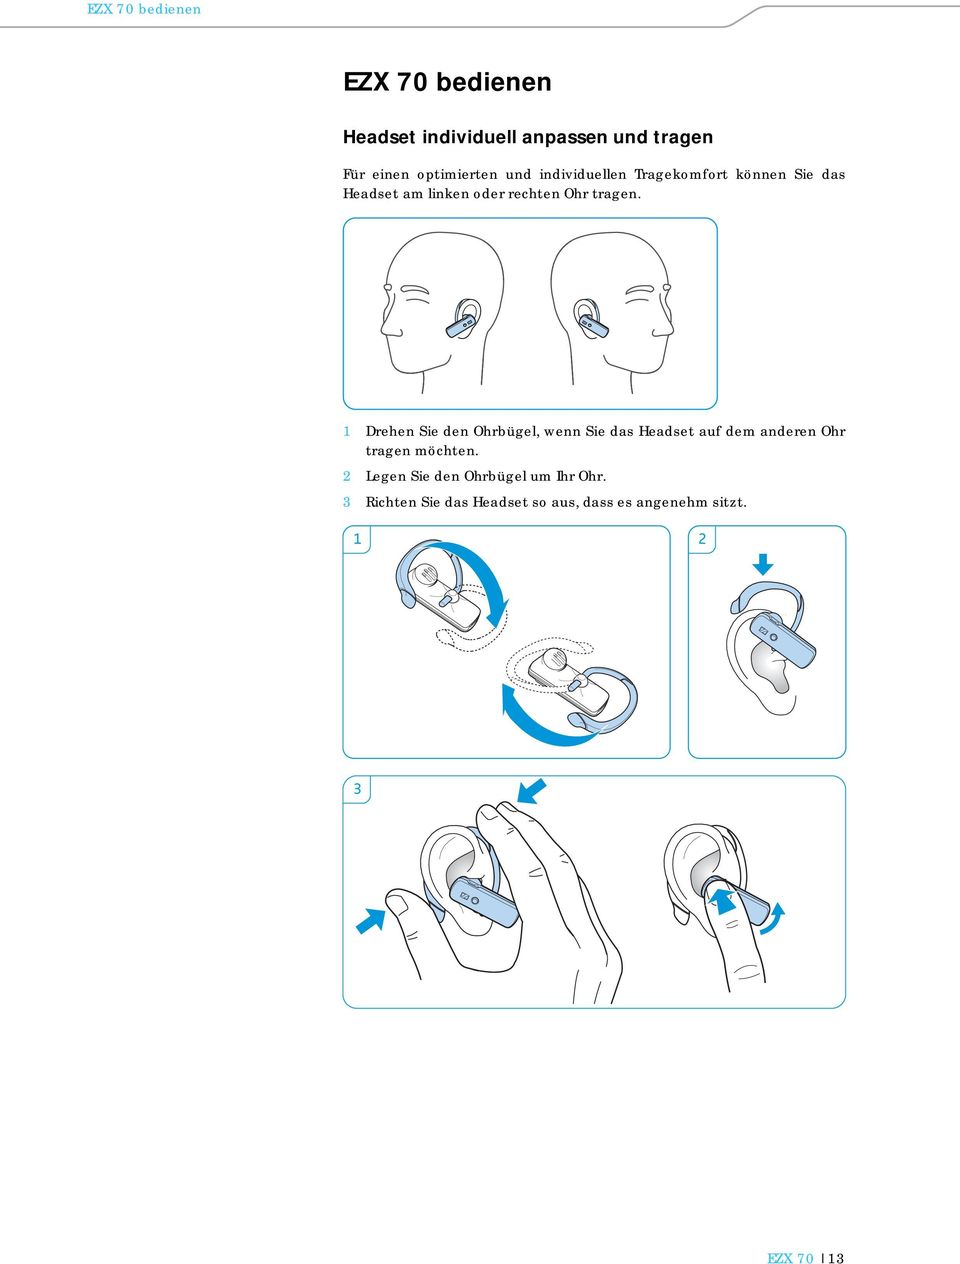 1 Drehen Sie den Ohrbügel, wenn Sie das Headset auf dem anderen Ohr tragen möchten.